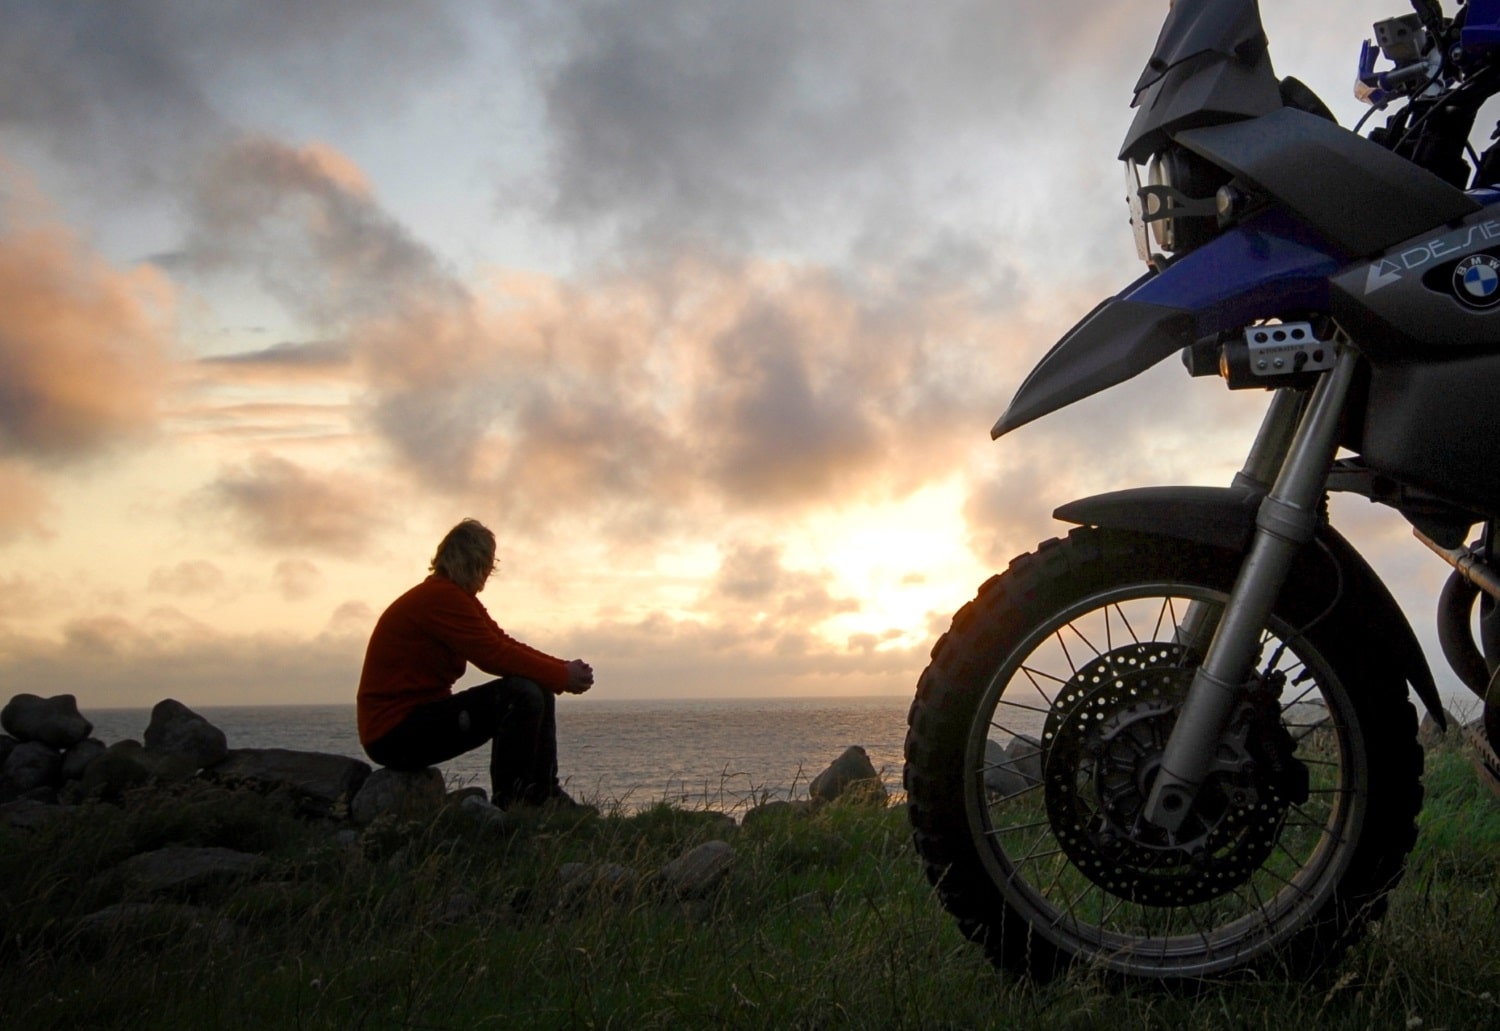 Moto-pneumatici.it chiama a raccolta i motociclisti per la terza “Biker Summer 2015” 2